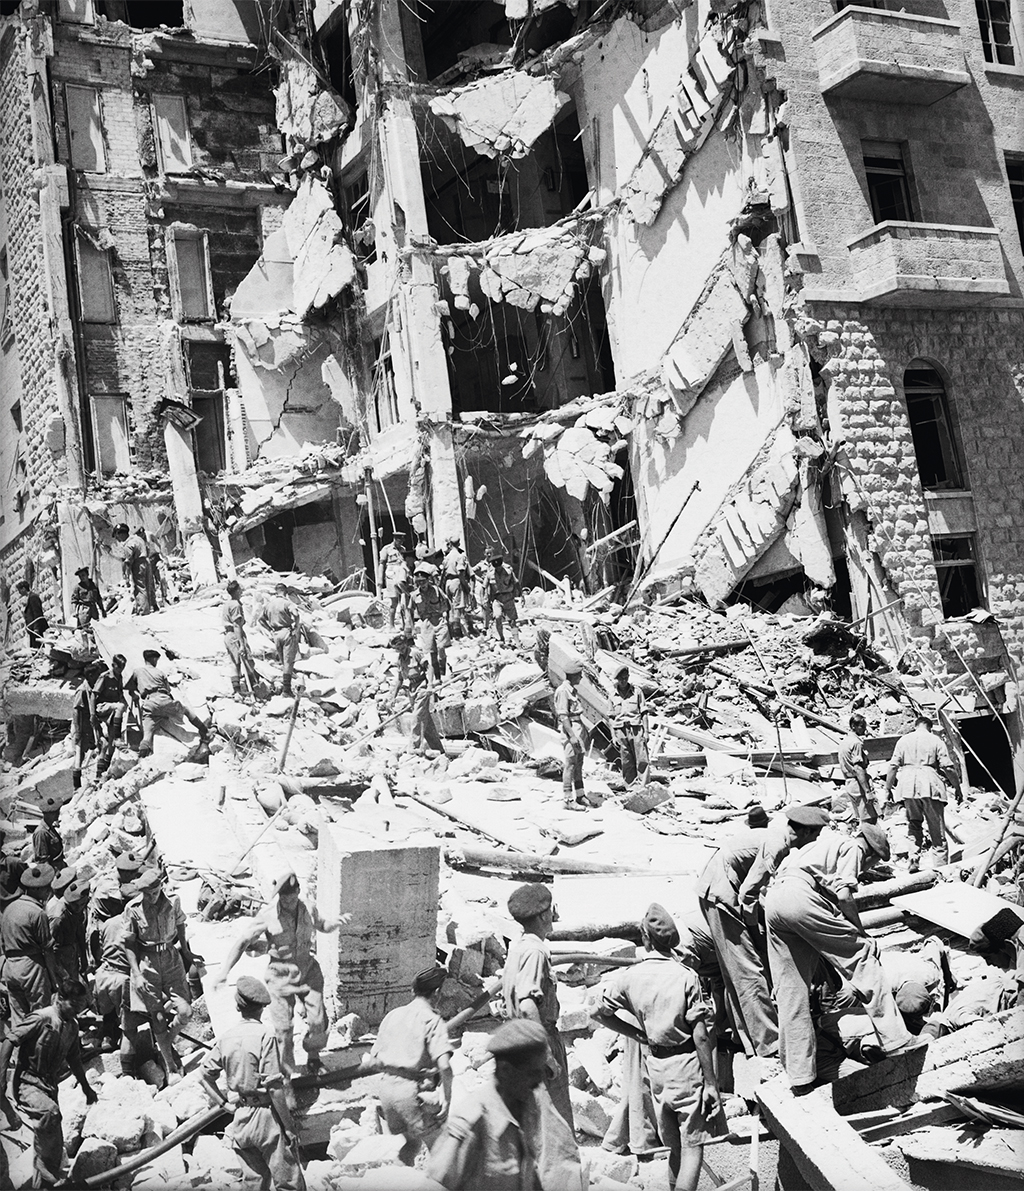 Atentado a bomba contra o Hotel King David, em Jerusalém, executado pelo grupo terrorista judeu Irgun, em 1946: 91 mortos, a maioria britânicos. Na imagem, a fachada do hotel destruído.